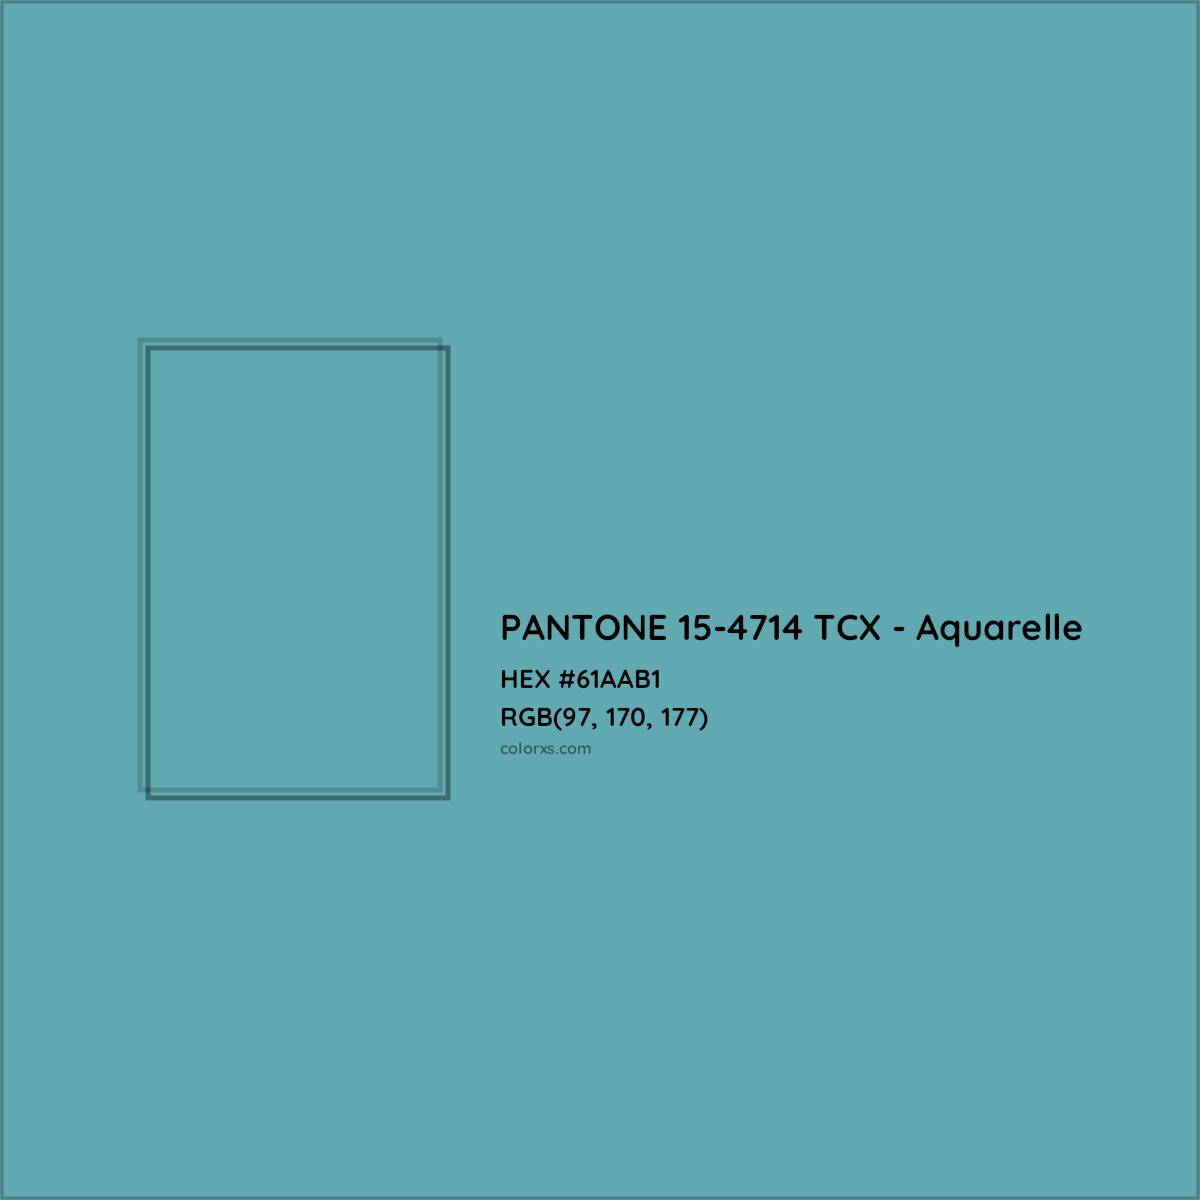 HEX #61AAB1 PANTONE 15-4714 TCX - Aquarelle CMS Pantone TCX - Color Code